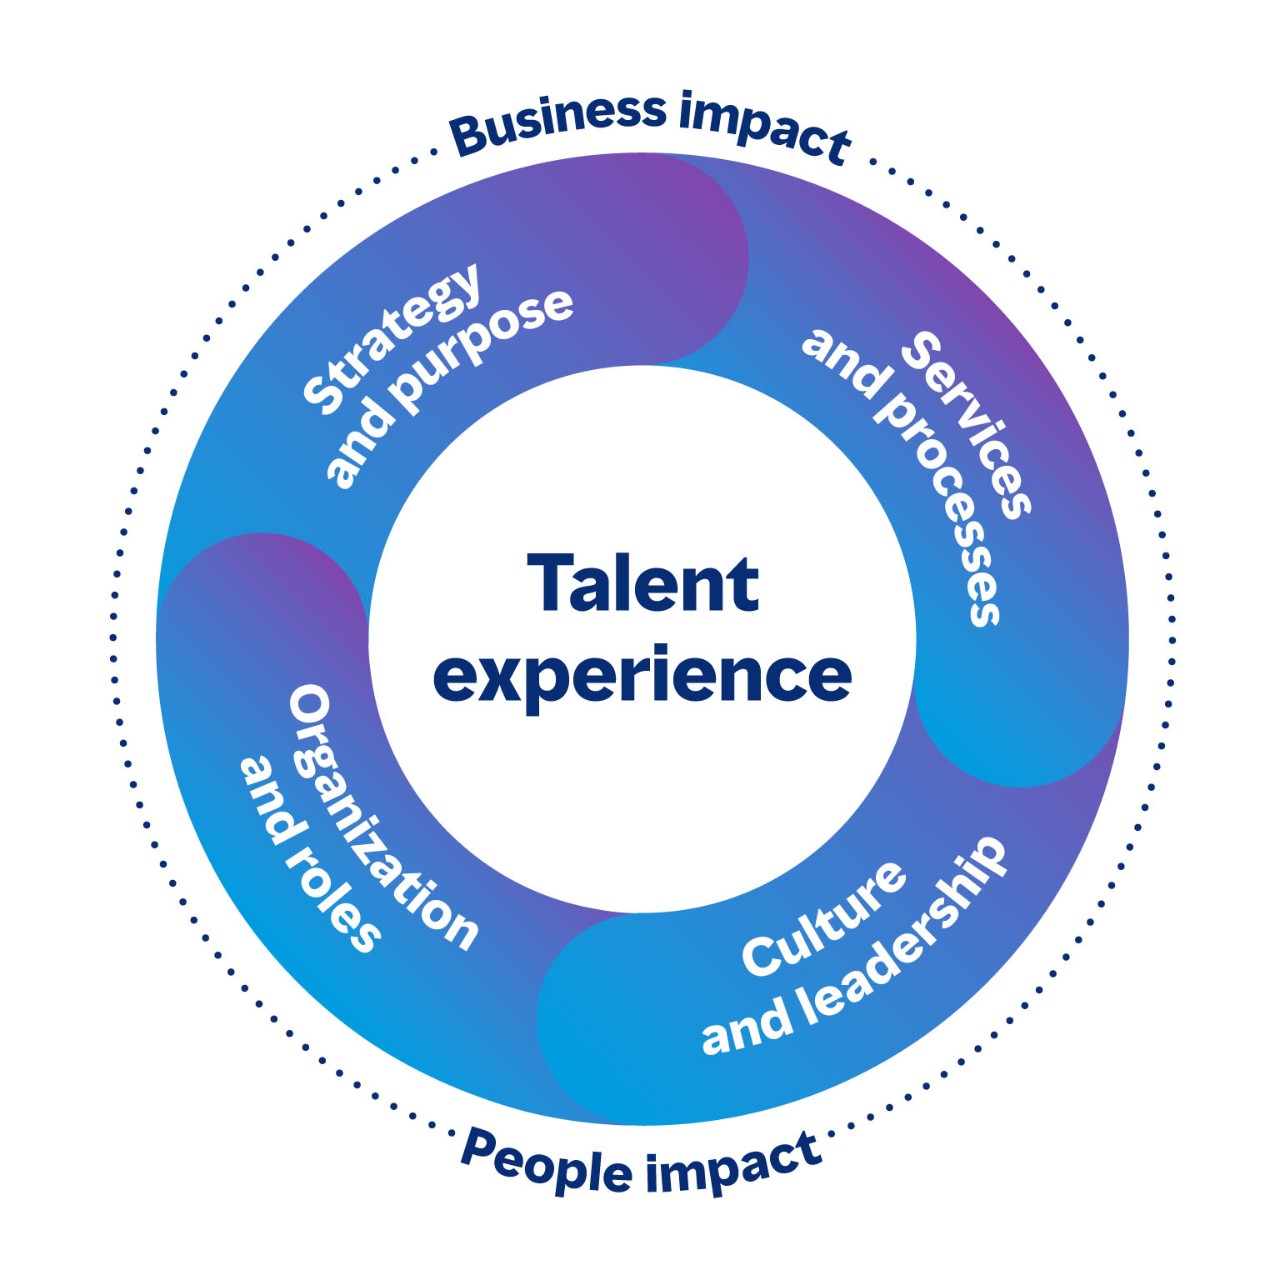 Immagine circolare che mostra le aree connesse nella talent experience che hanno un impatto sia sul business che sulle persone. Le quattro aree sono Strategia e scopo, Servizi e processi, Cultura e leadership, e Organizzazione e ruoli.